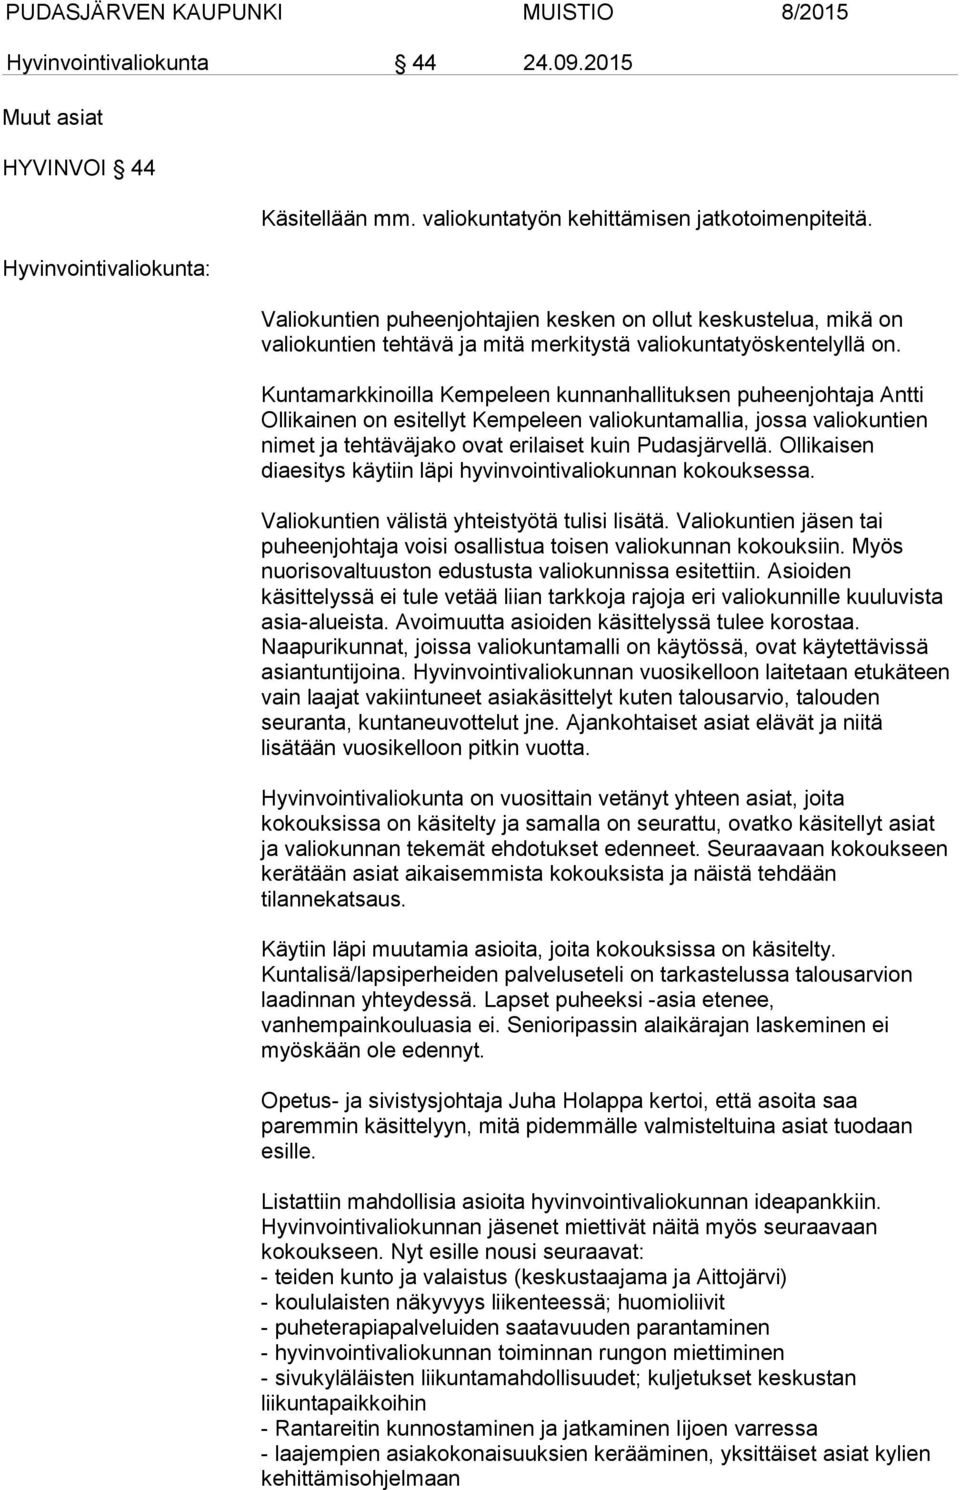 Kuntamarkkinoilla Kempeleen kunnanhallituksen puheenjohtaja Antti Ollikainen on esitellyt Kempeleen valiokuntamallia, jossa valiokuntien nimet ja tehtäväjako ovat erilaiset kuin Pudasjärvellä.